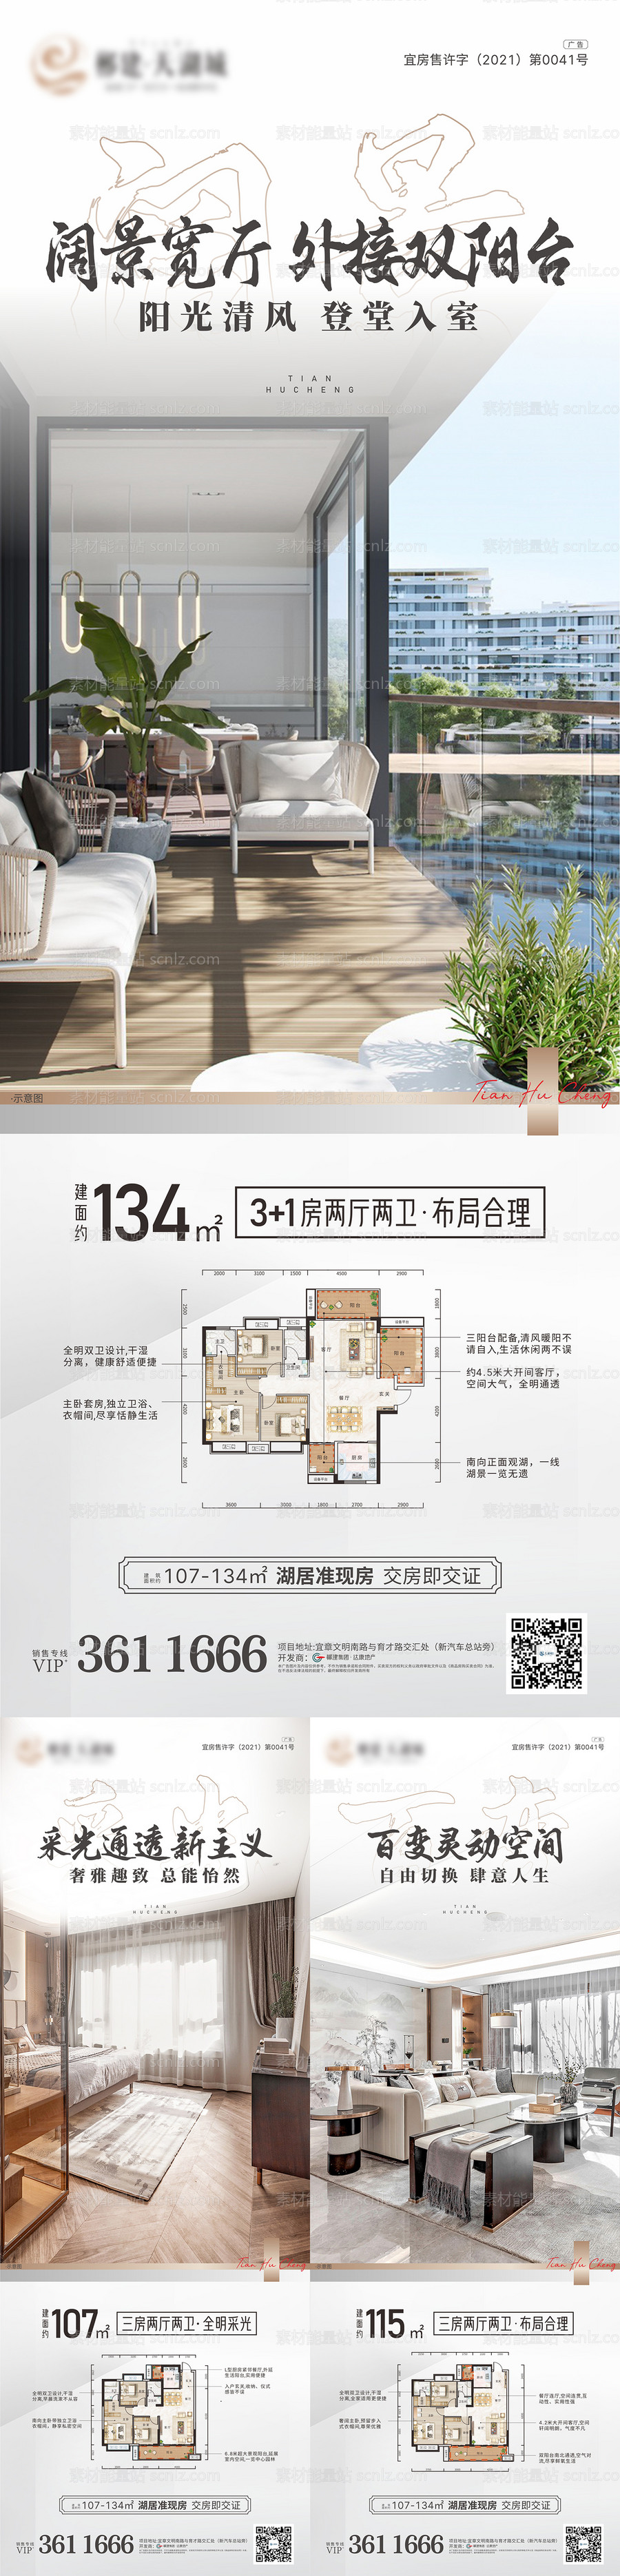 素材能量站-湖居户型系列房地产长图海报